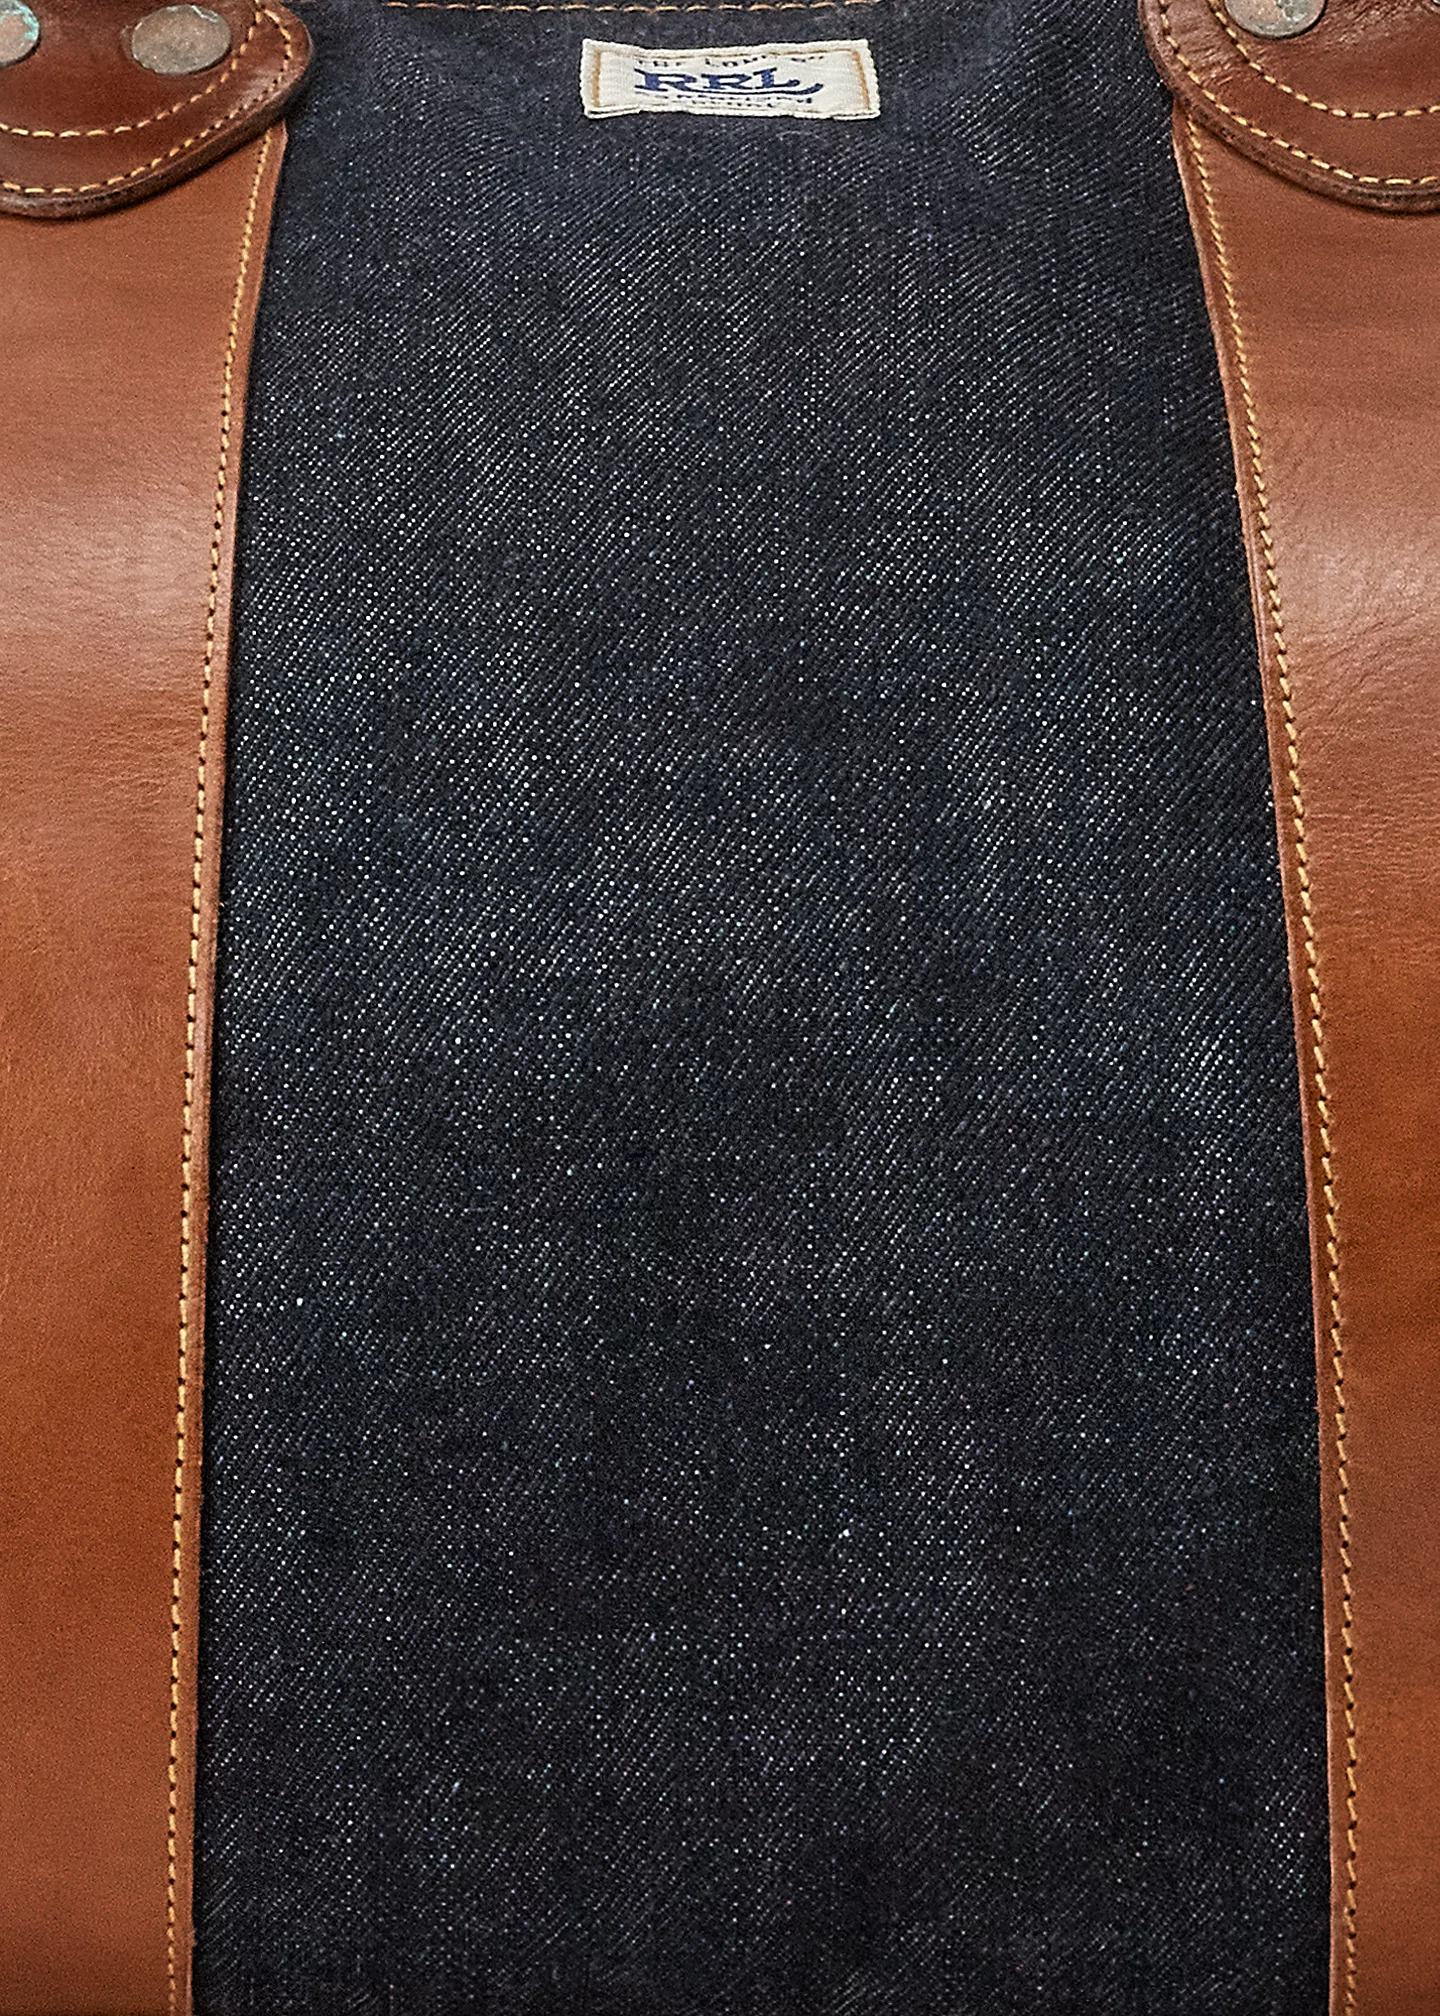 Brand bag Leather-Trim Denim Duffel-,$58.43-3